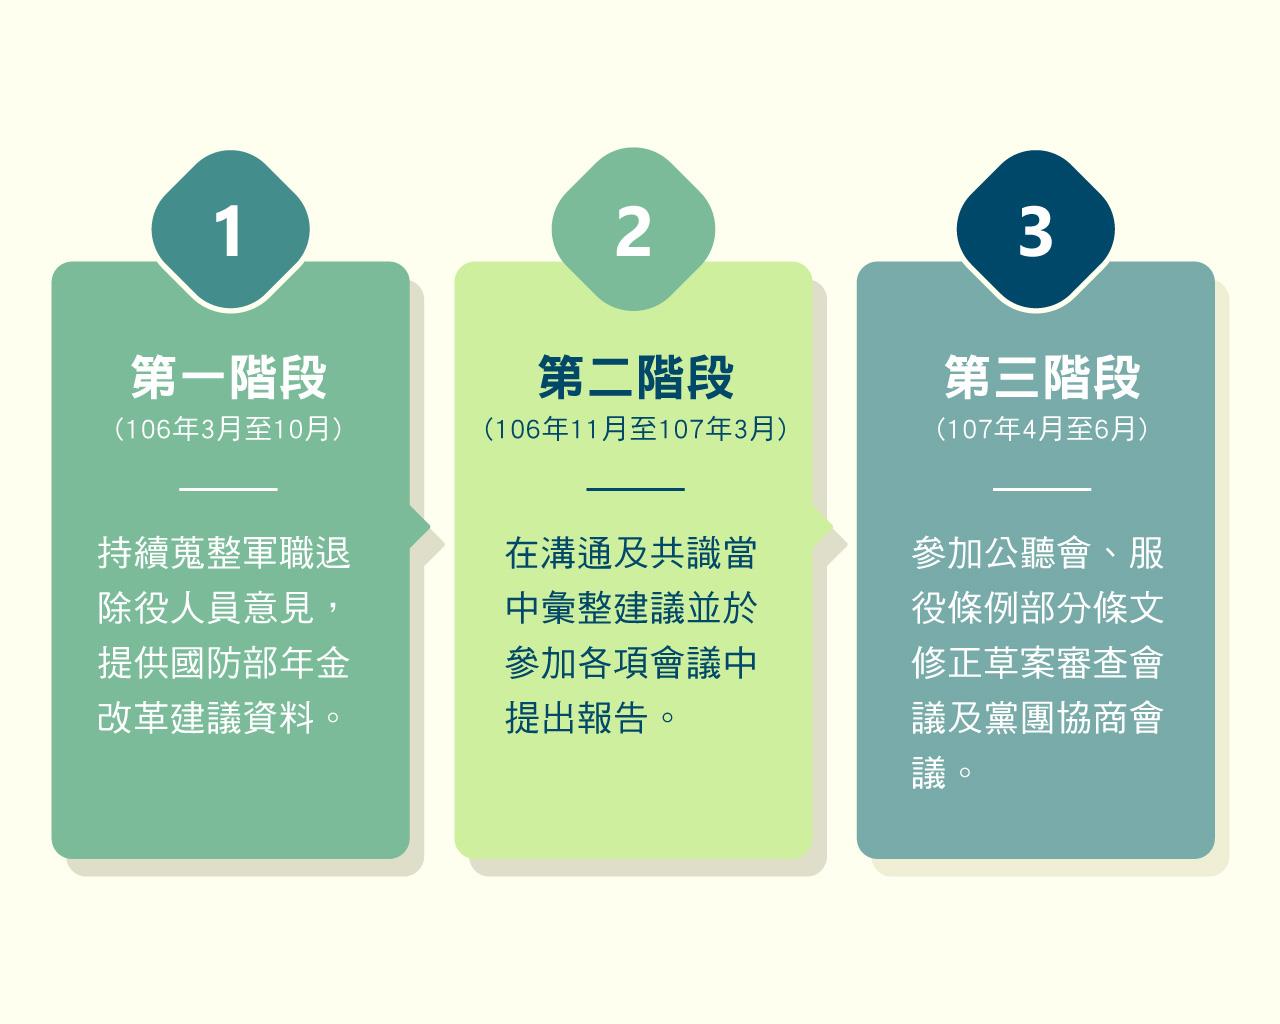 年金改革三階段規劃內容